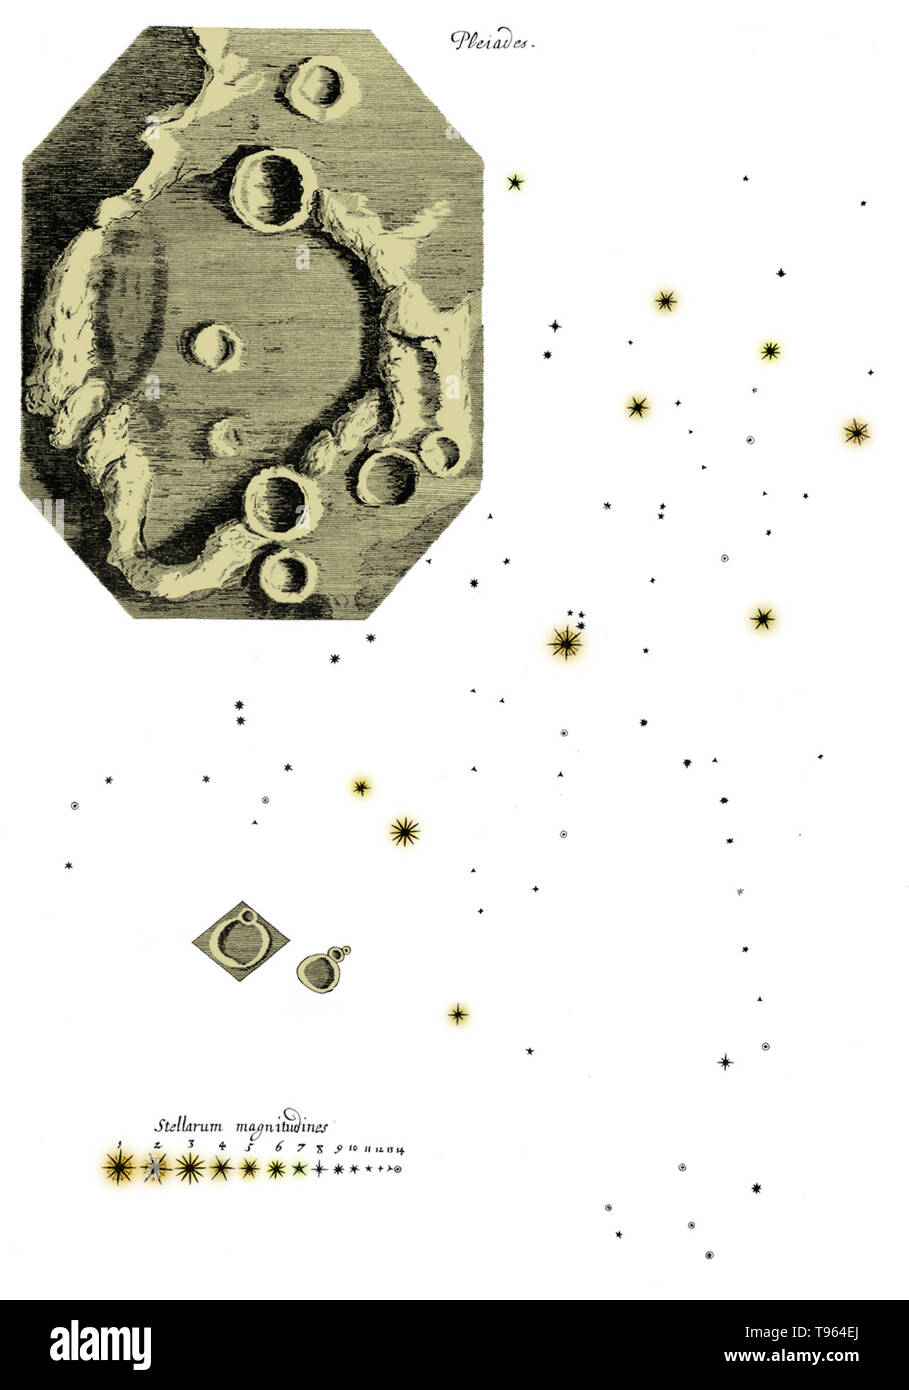 Farbe verbesserte Zeichnungen der Mond und die Plejaden von Hooke die Micrographia. Robert Hooke (1635-1703) war ein britischer Wissenschaftler, der zahlreiche Entdeckungen in so unterschiedlichen Bereichen wie Astronomie und Mikrobiologie. Sein Name ist in das Hookesche Gesetz, das die Last auf einer Feder auf ihre Erweiterung bezieht sich erinnert. Er verwendet ein zusammengesetztes Mikroskop eine Vielzahl von Proben zu beobachten und dann veröffentlicht die Ergebnisse seiner bemerkenswert Ausführliche Bemerkungen in Micrographia im Jahre 1665. Stockfoto